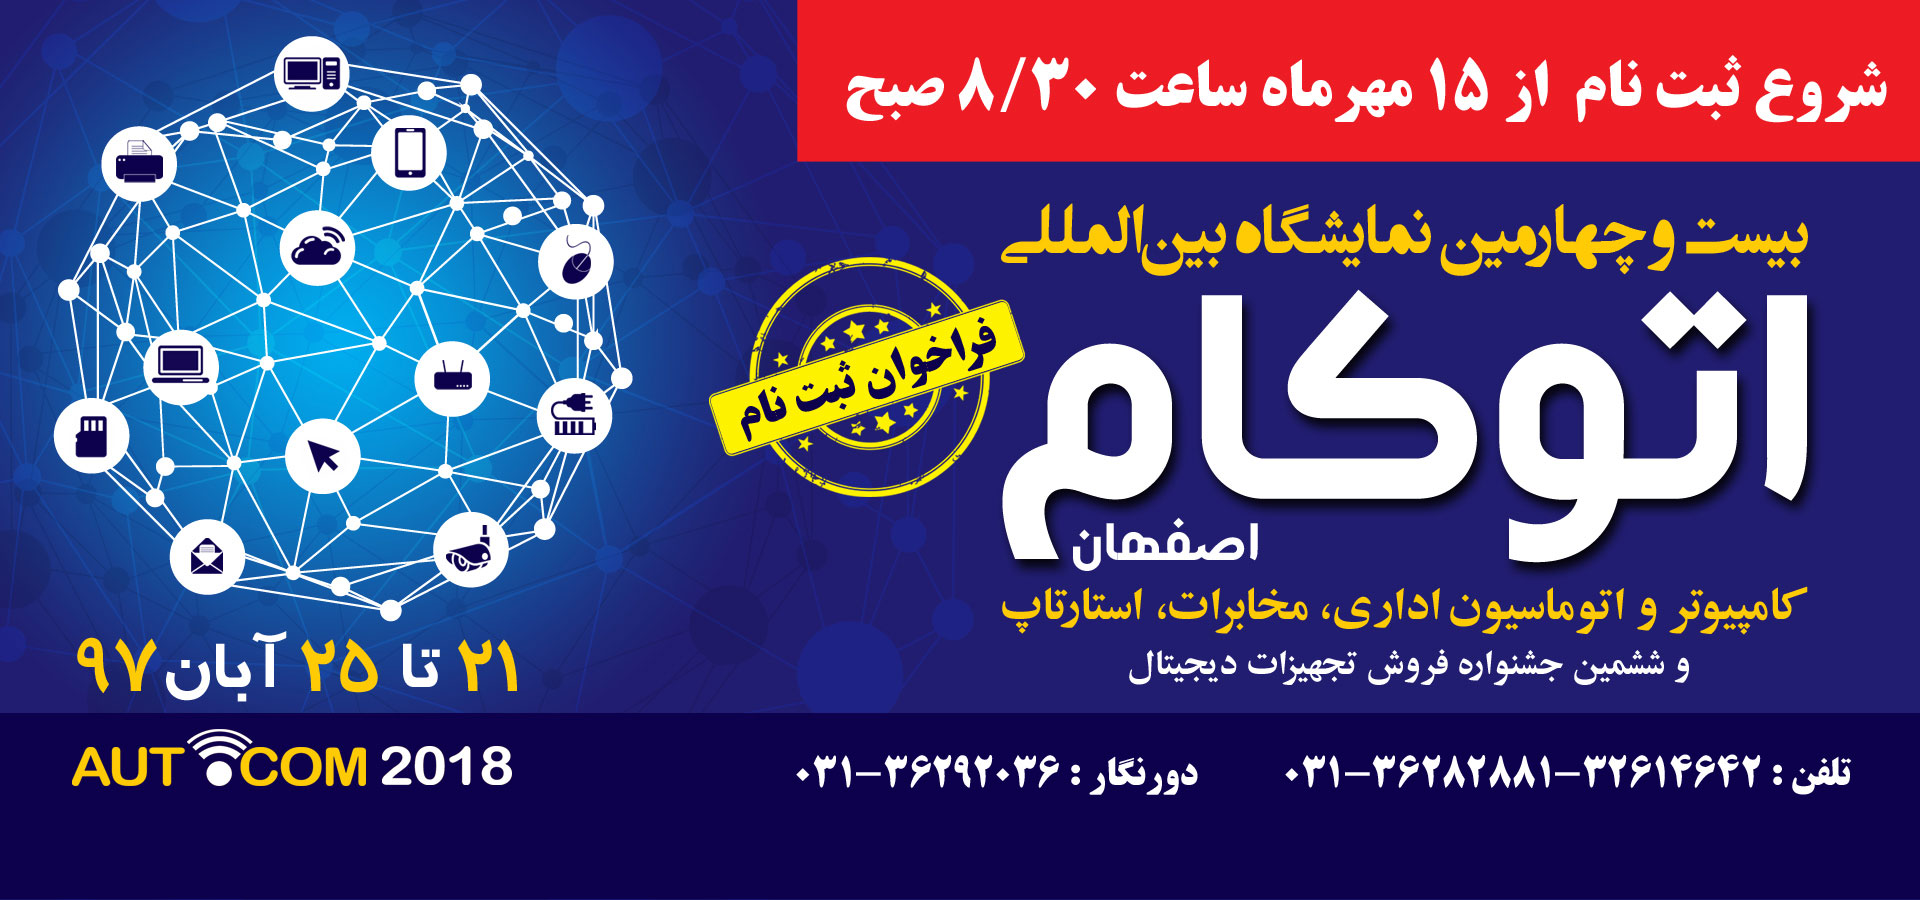 نمایشگاه بین المللی کامپیوتر و اتوماسیون اداری، مخابرات و استارت آپ اصفهان 97